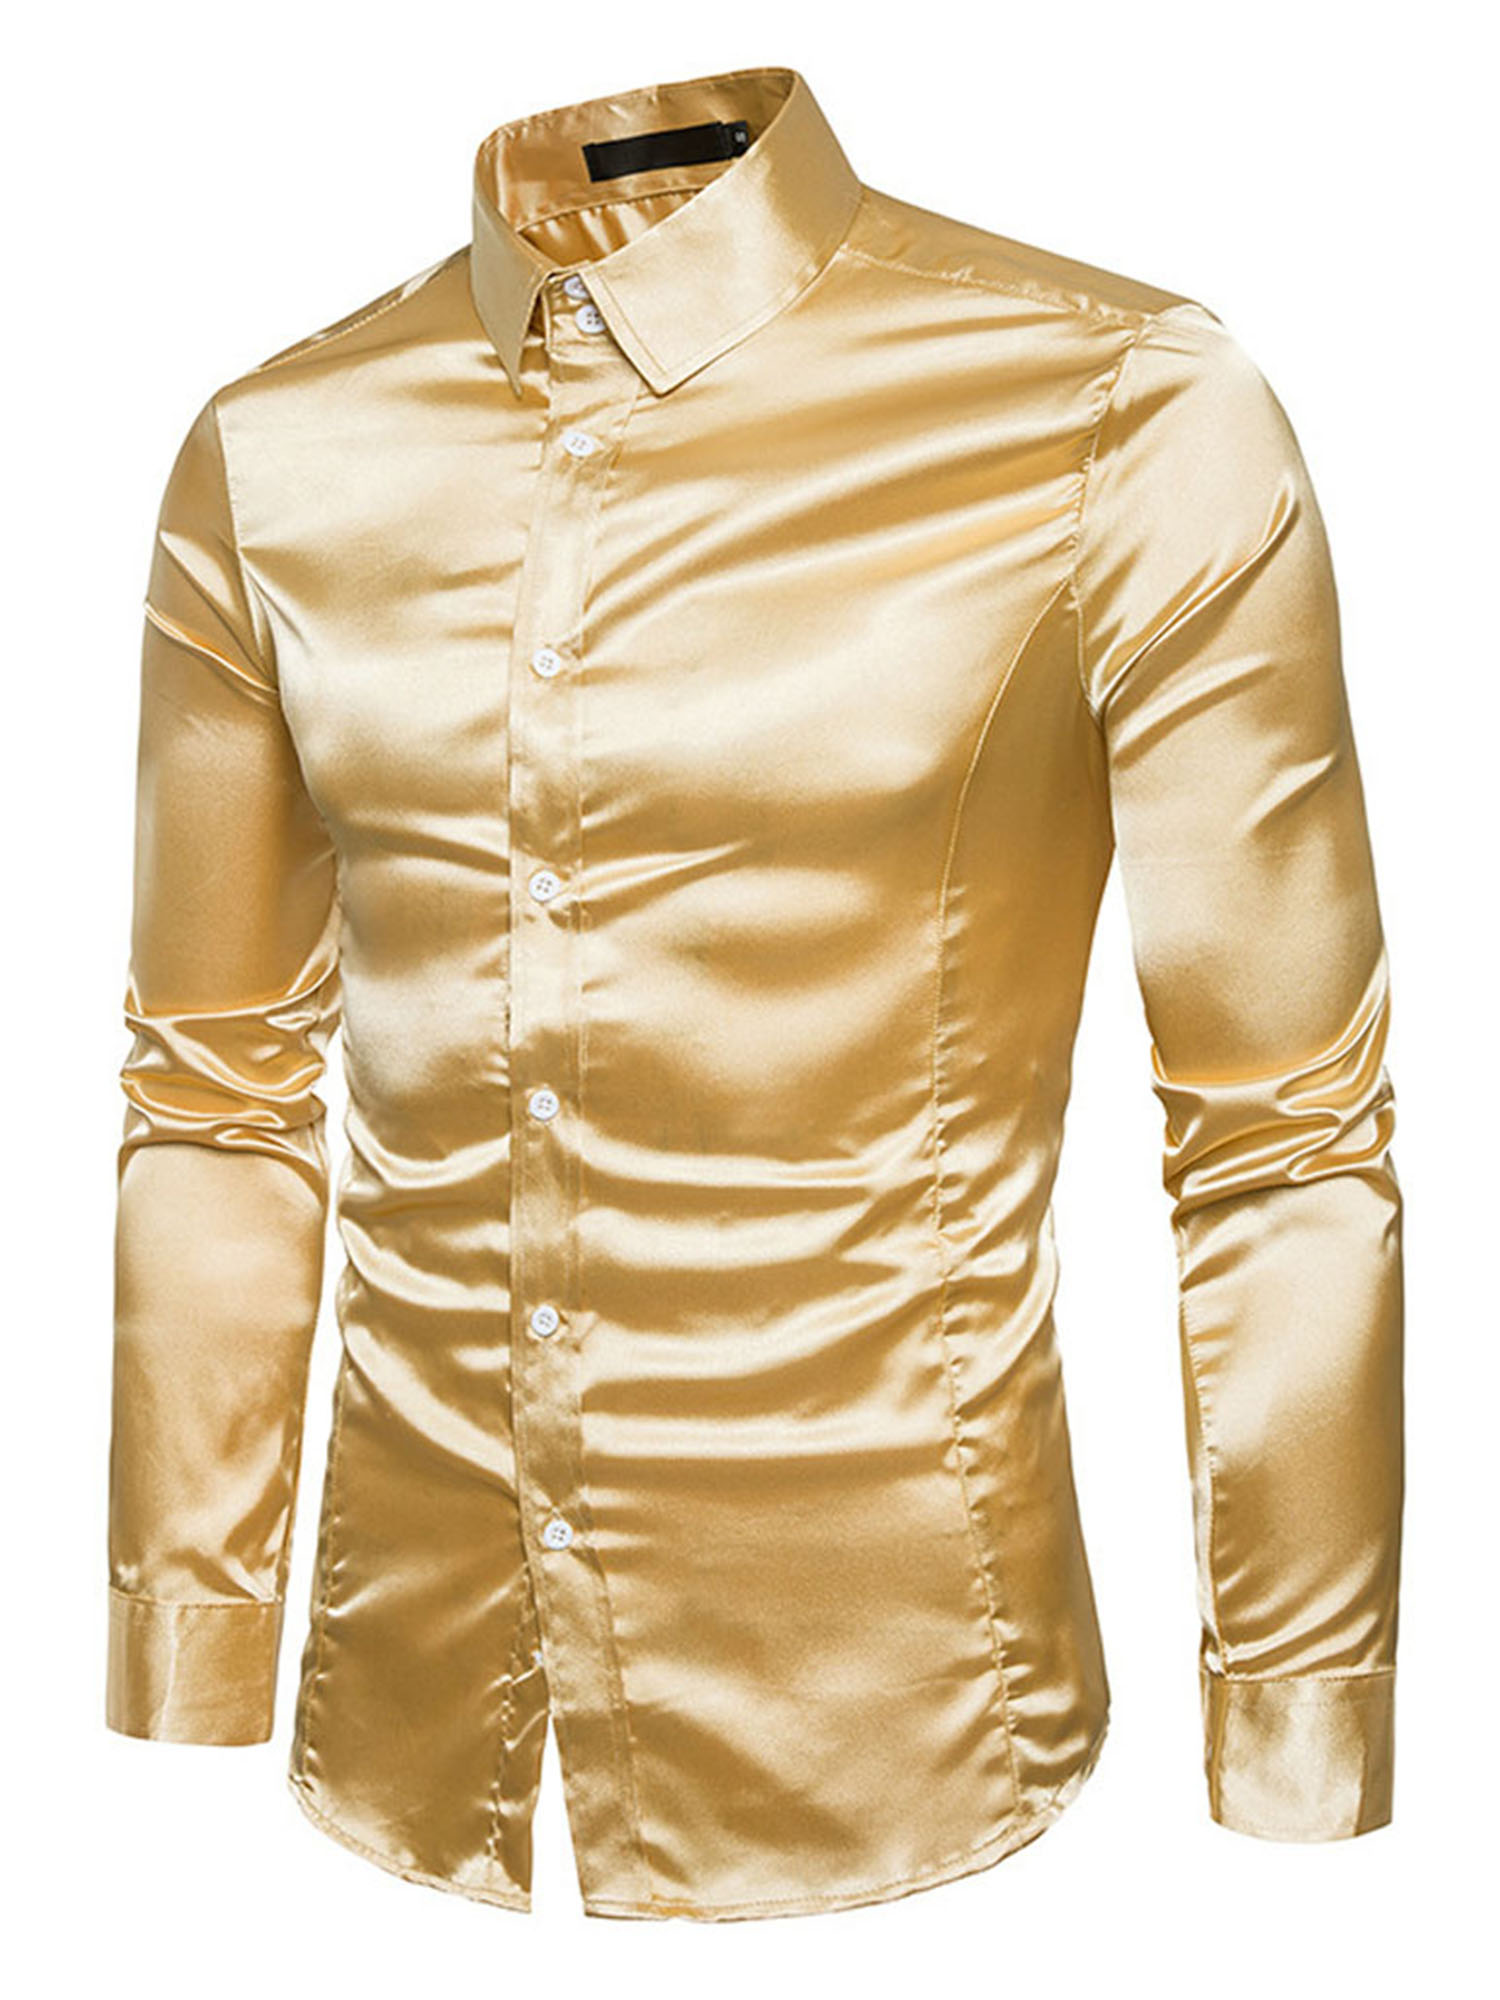 Pudcoco Men's Silk Satin Long Sleeve Shirt Ruffled Vintage Wedding Tuxedo Shirts - image 4 of 5